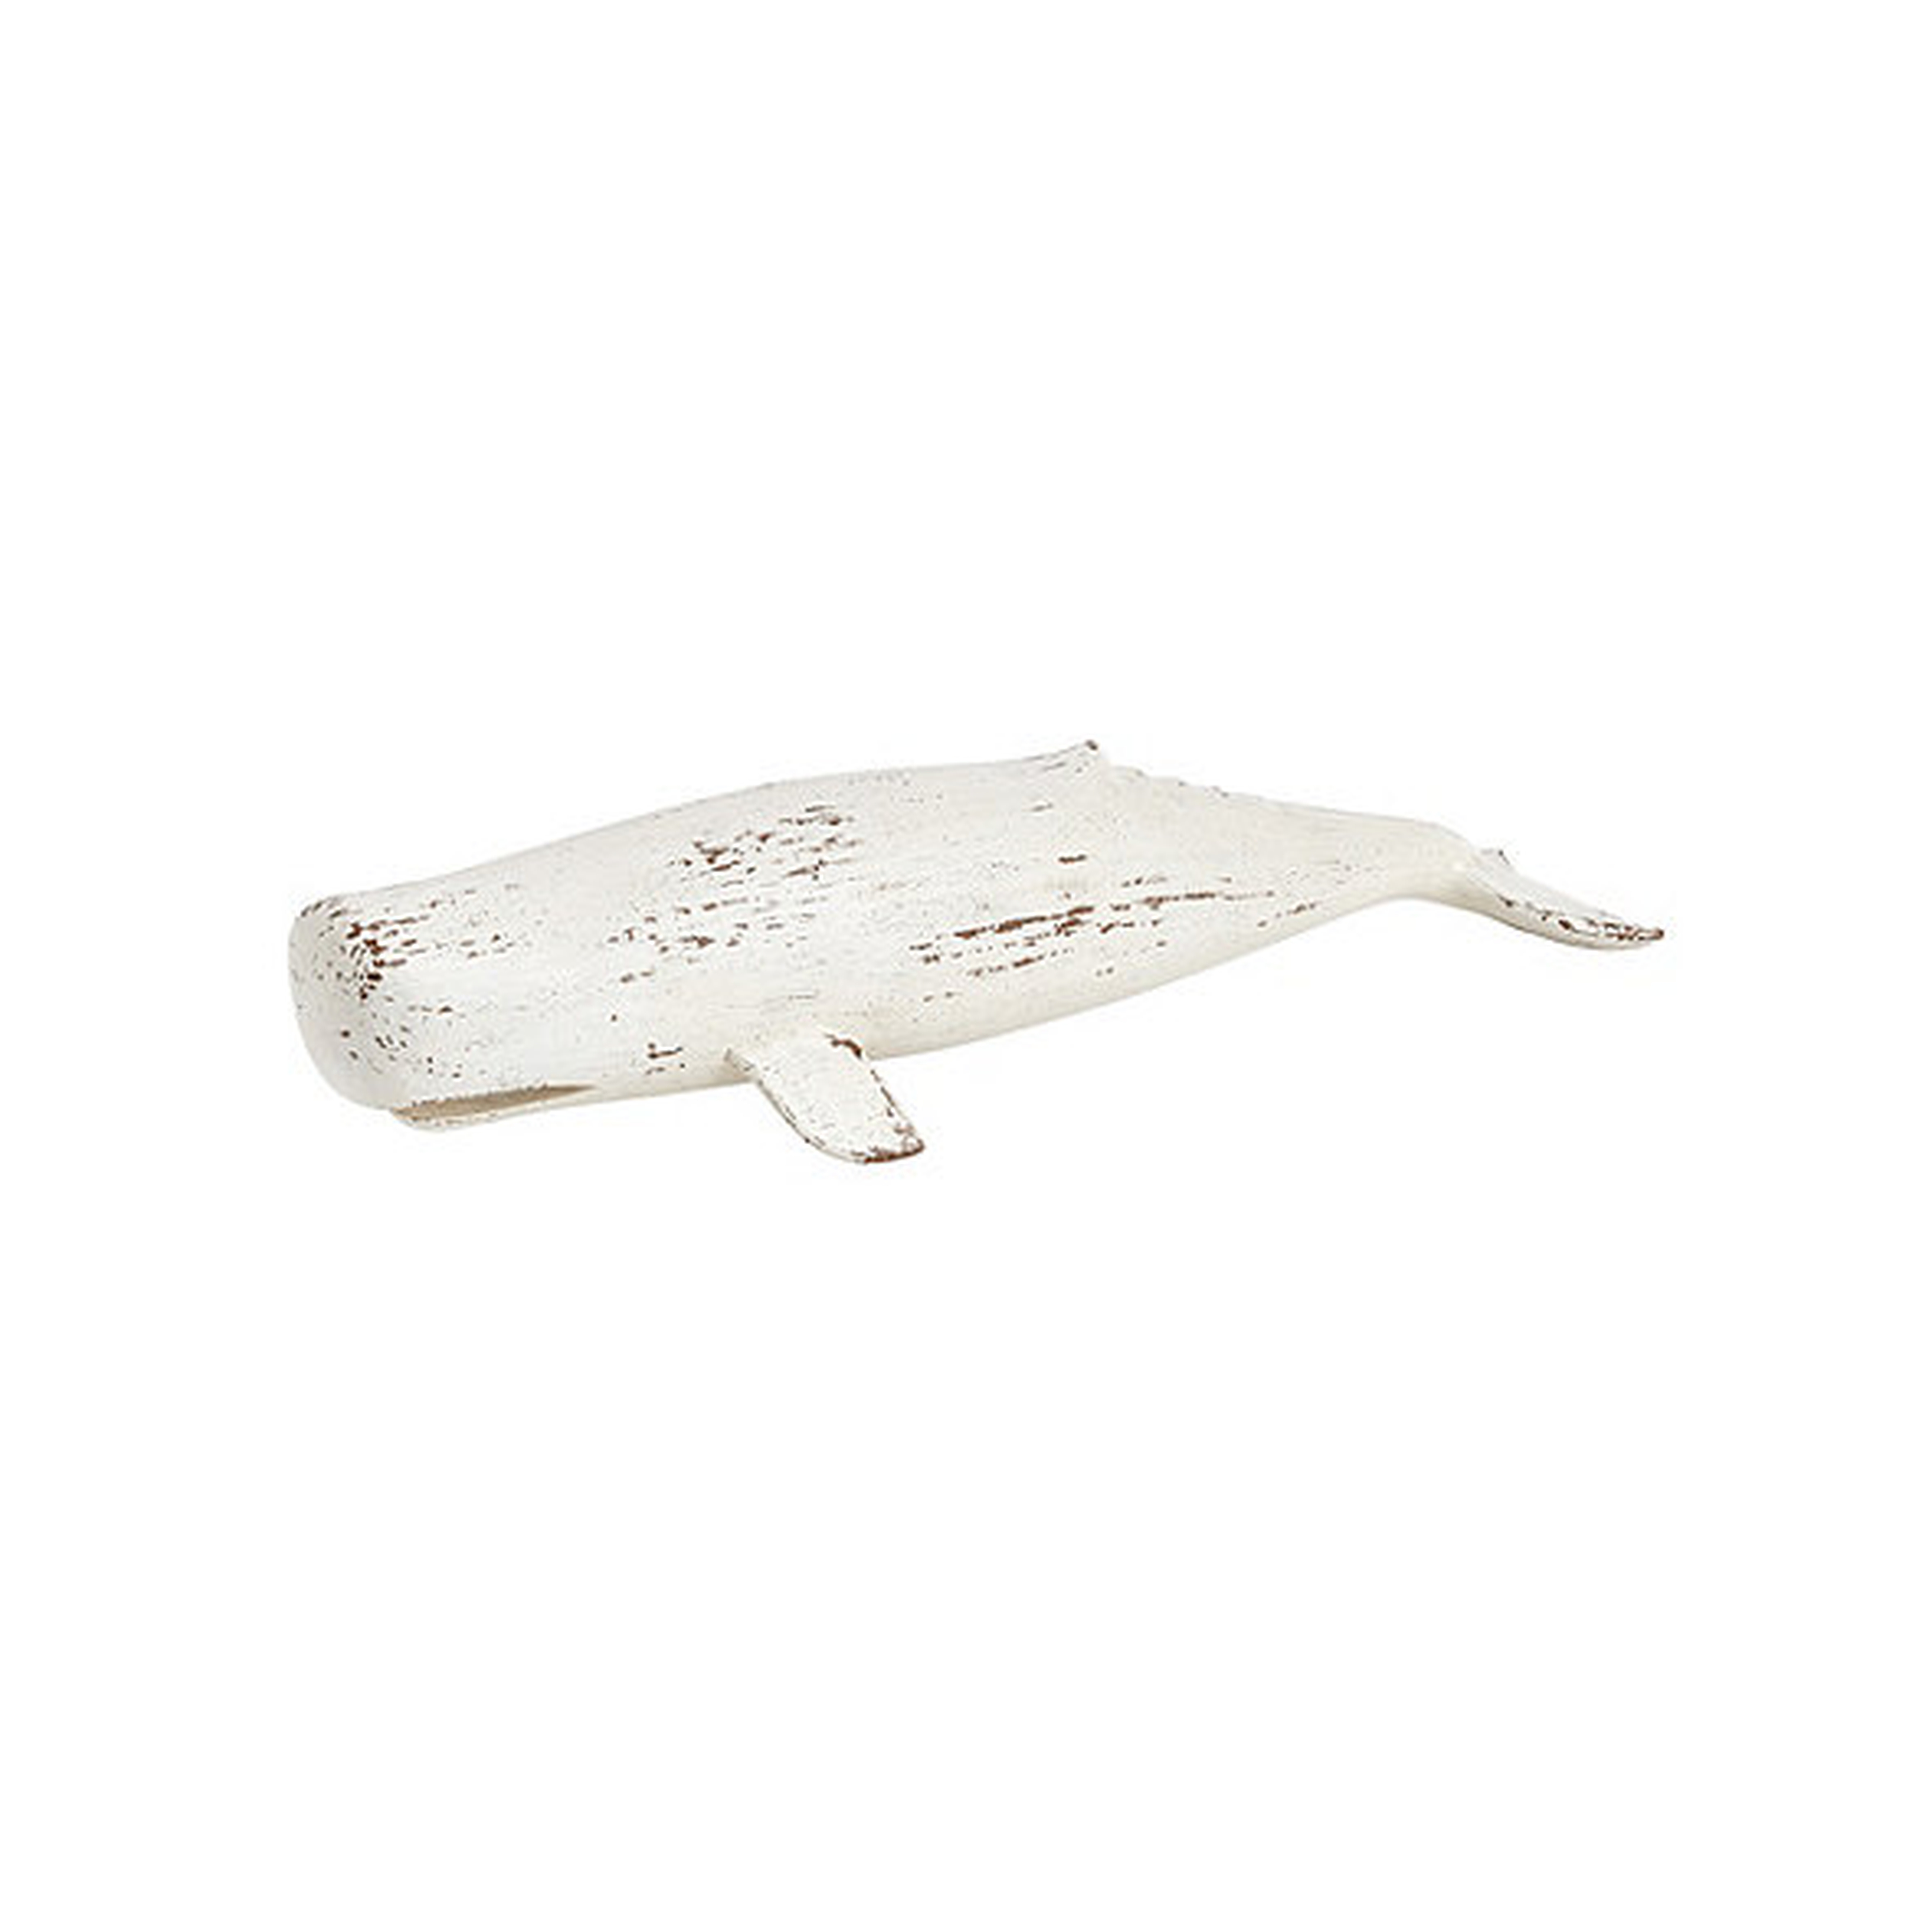 Moby Whale - Ballard Designs